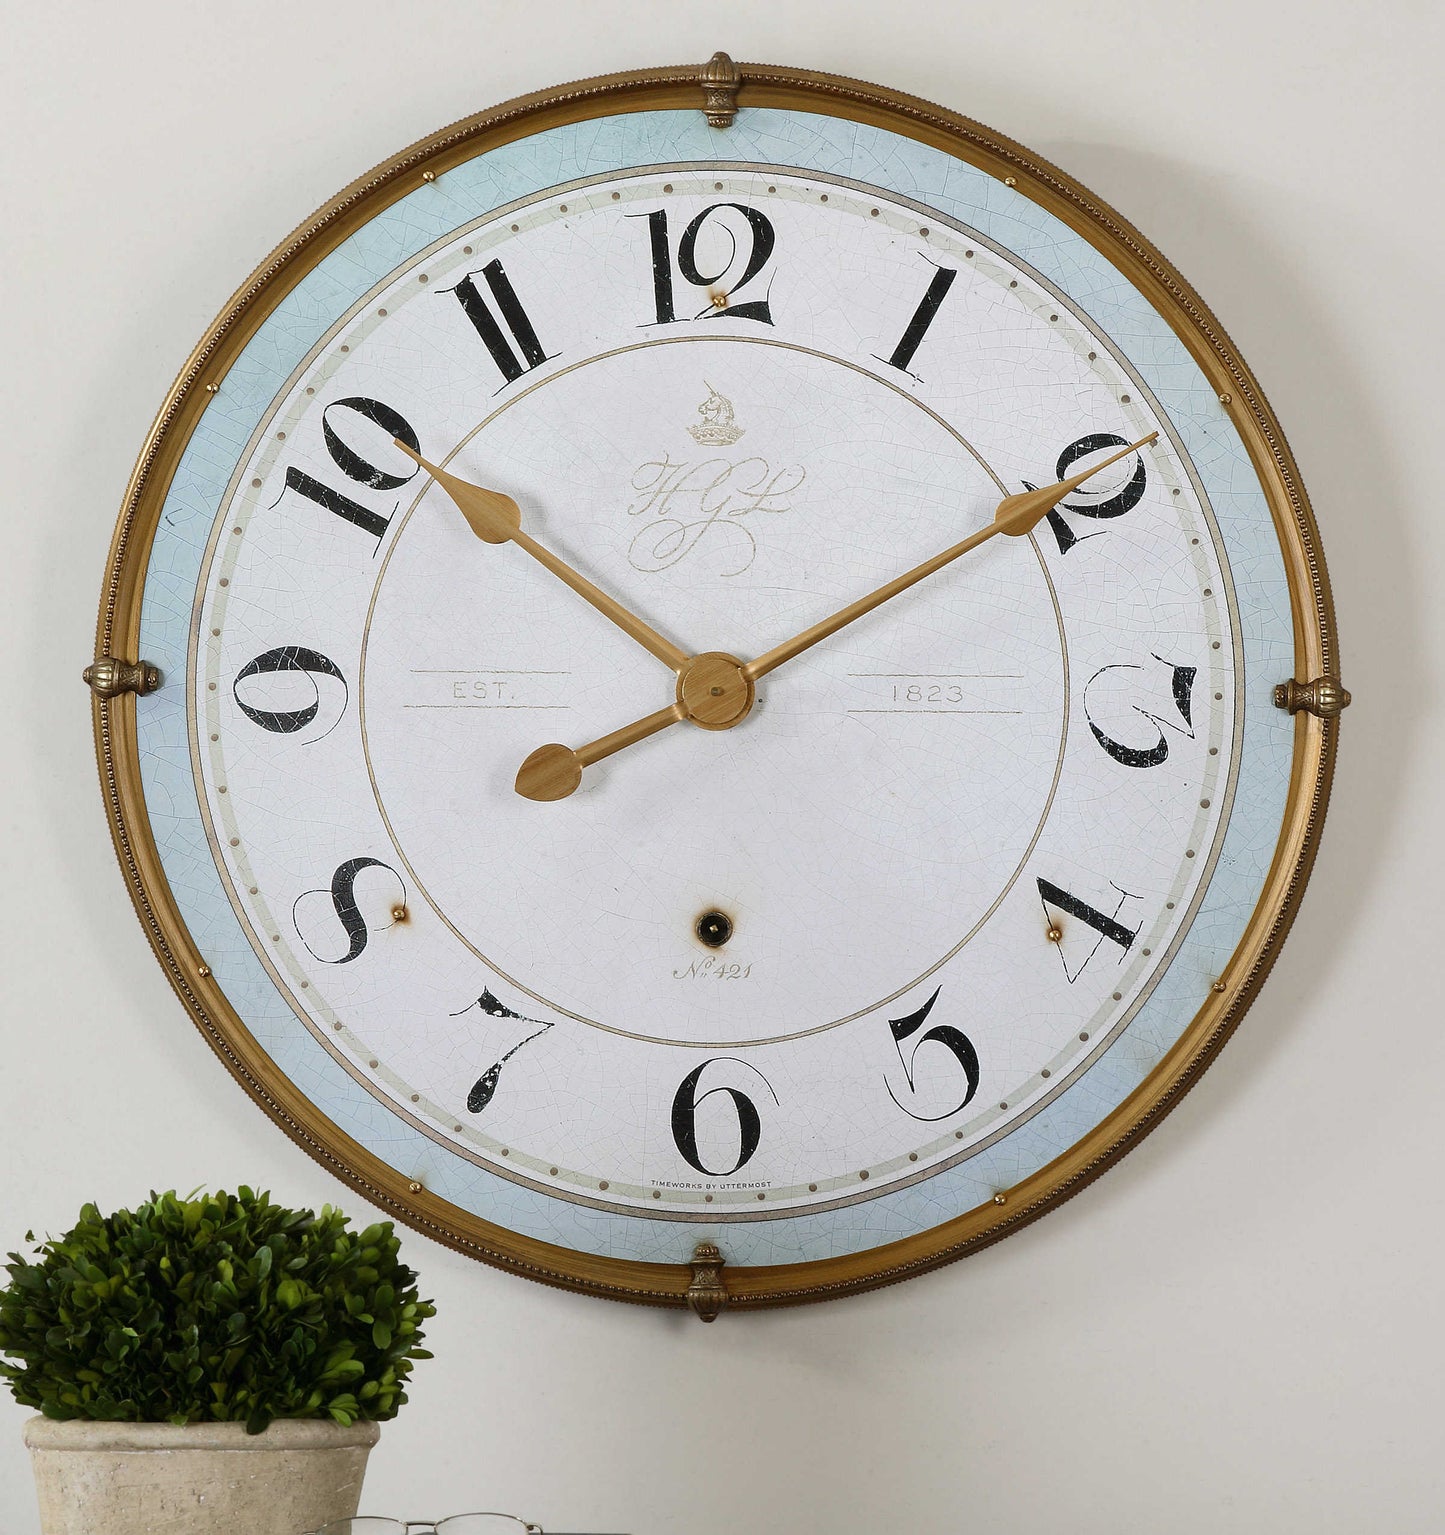 The Torriana Wall Clock